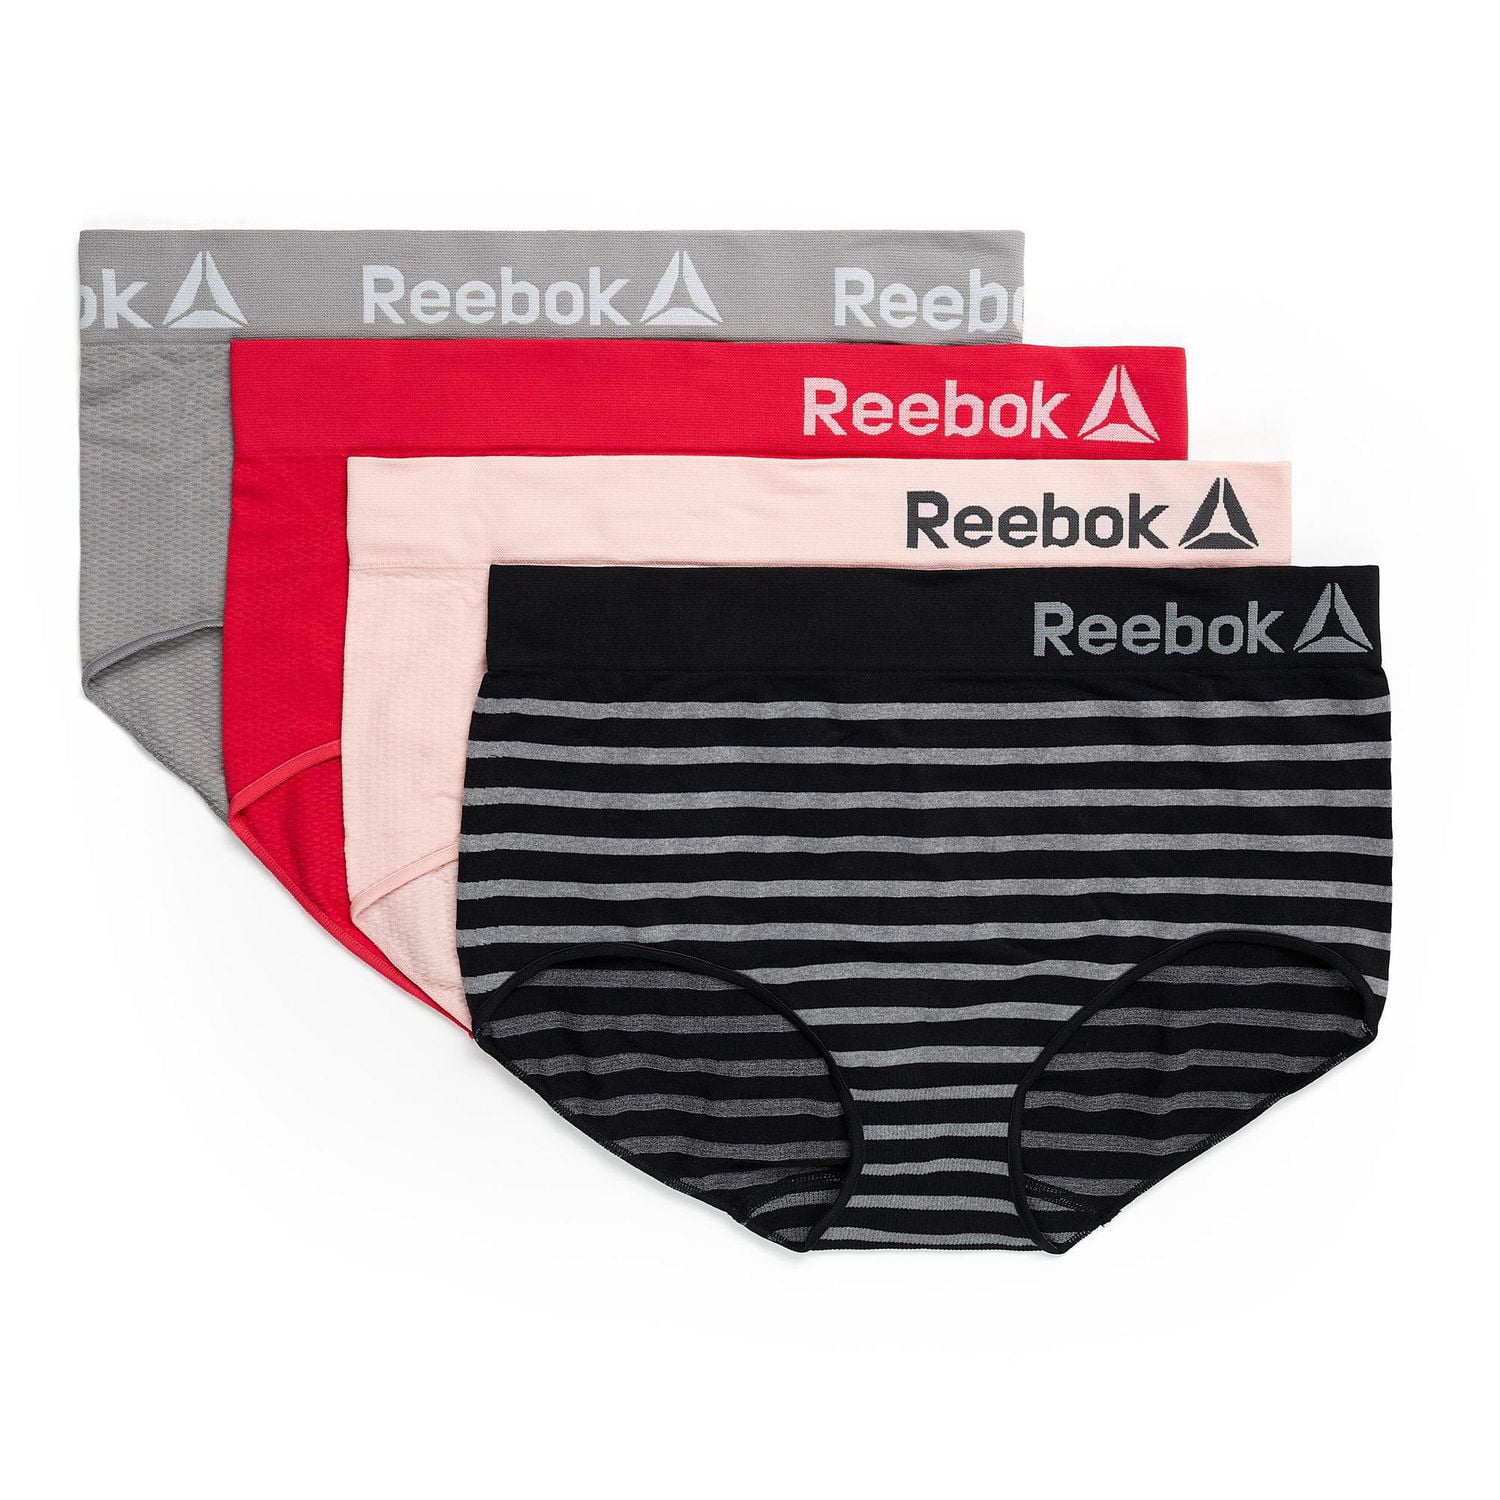 Reebok 2 pack seamless briefs